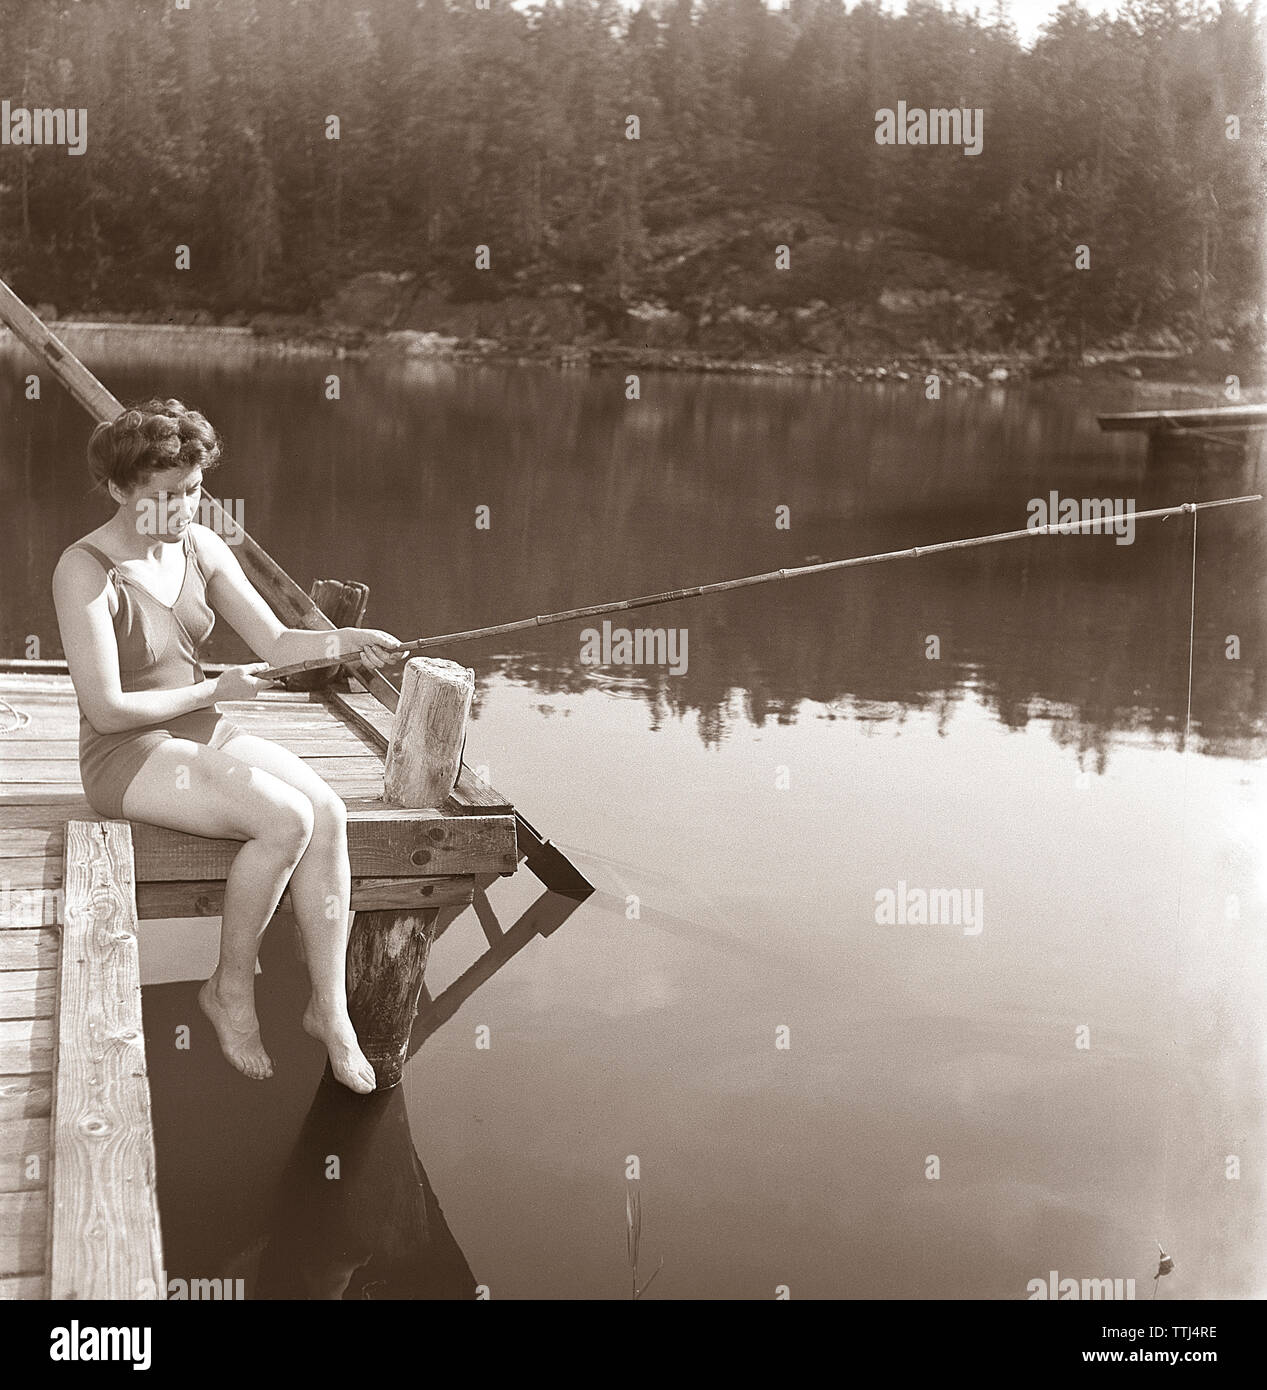 La pesca negli anni cinquanta. Una giovane donna che indossa un costume da bagno è la pesca. Kristoffersson ref K51-4 Svezia 1945 Foto Stock